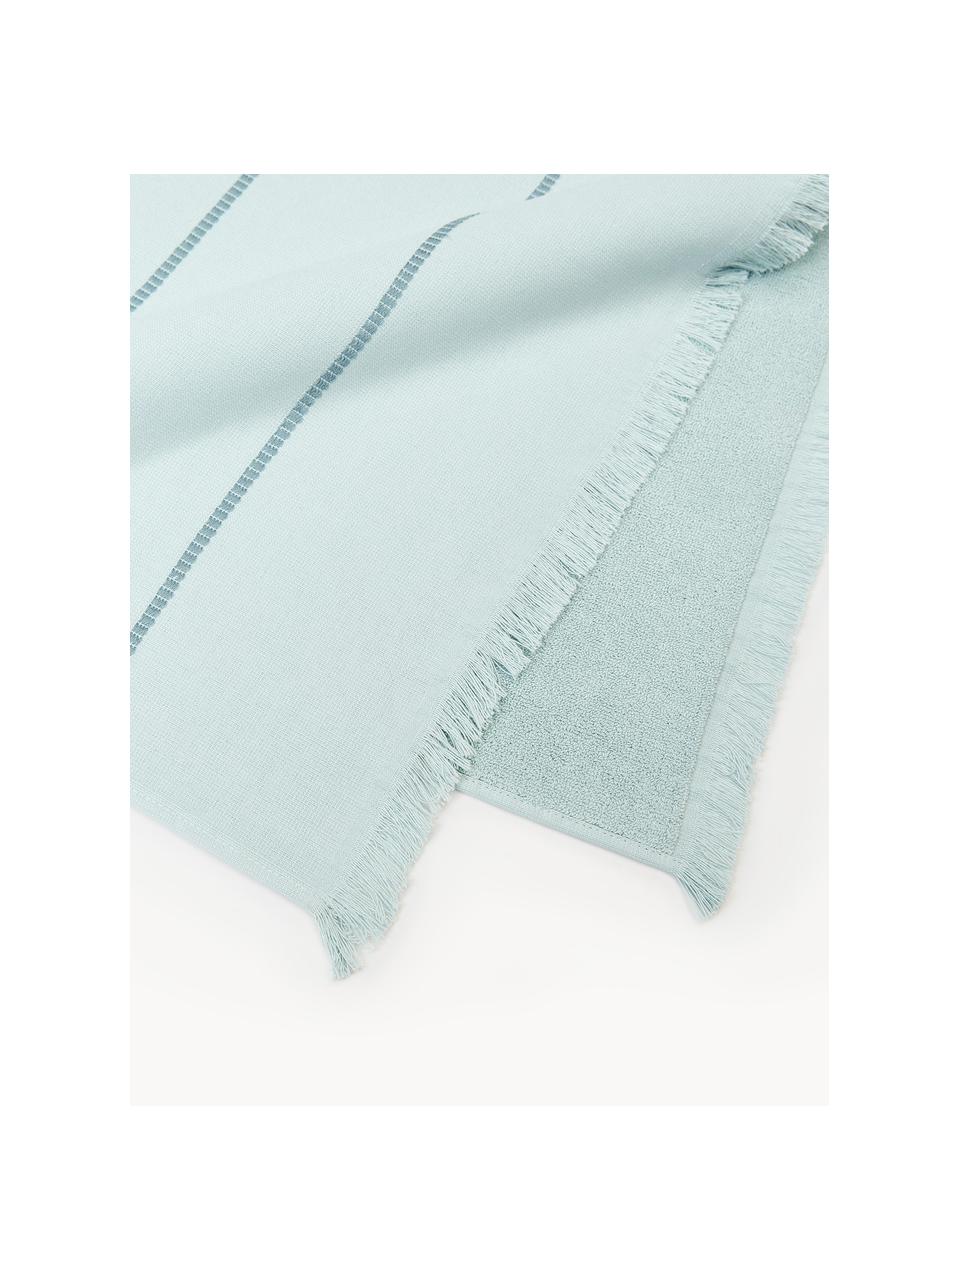 Ręcznik plażowy Elana, Jasny niebieski, niebieski, S 100 x D 180 cm